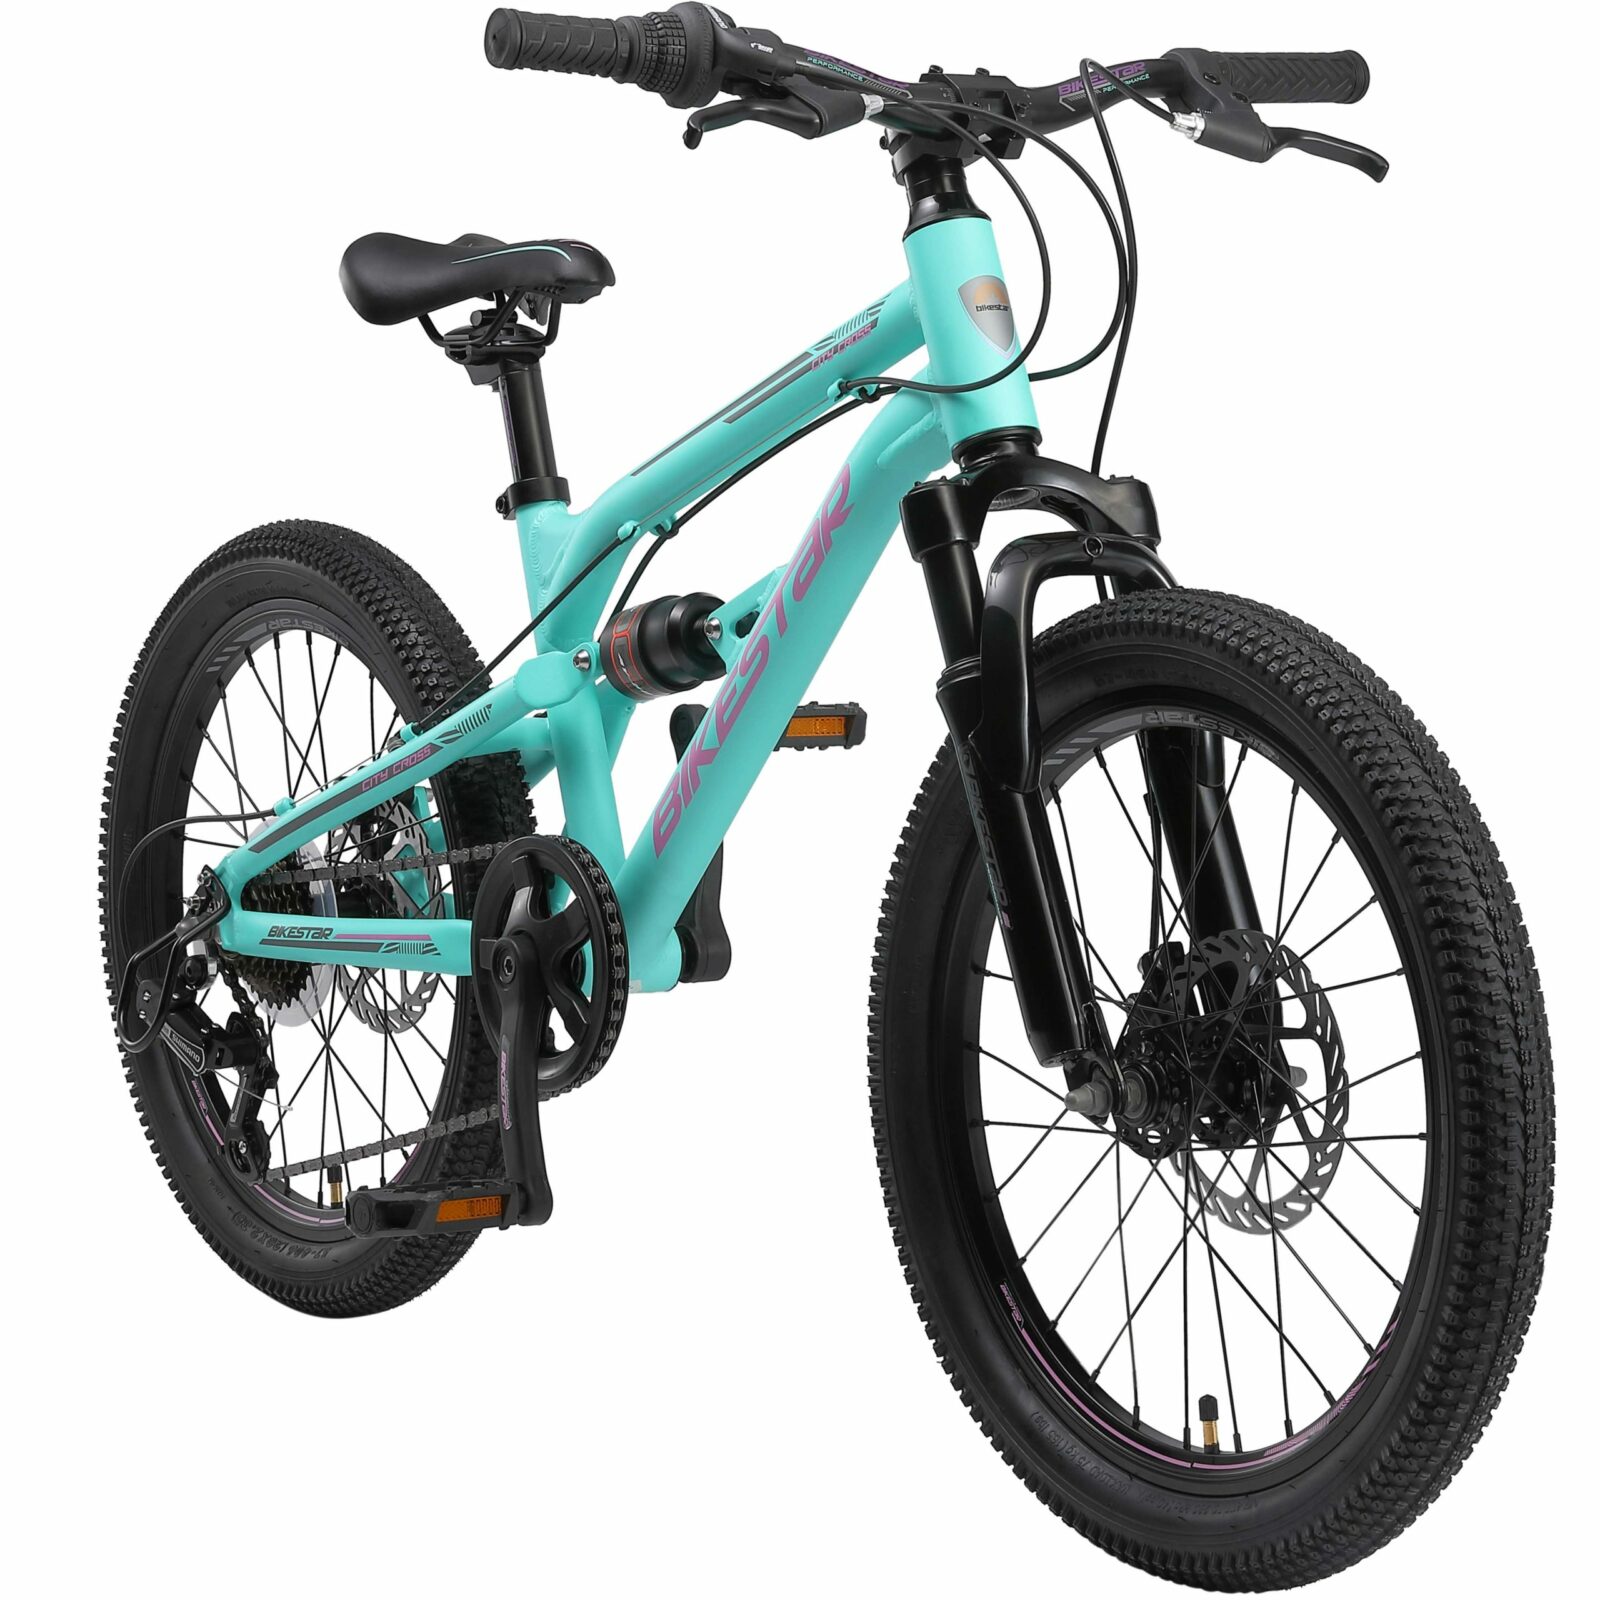 Op en neer gaan biologie Bejaarden Bikestar kinderfiets, MTB Fully, 7 speed, 20 inch, turquoise - Fietsdirect